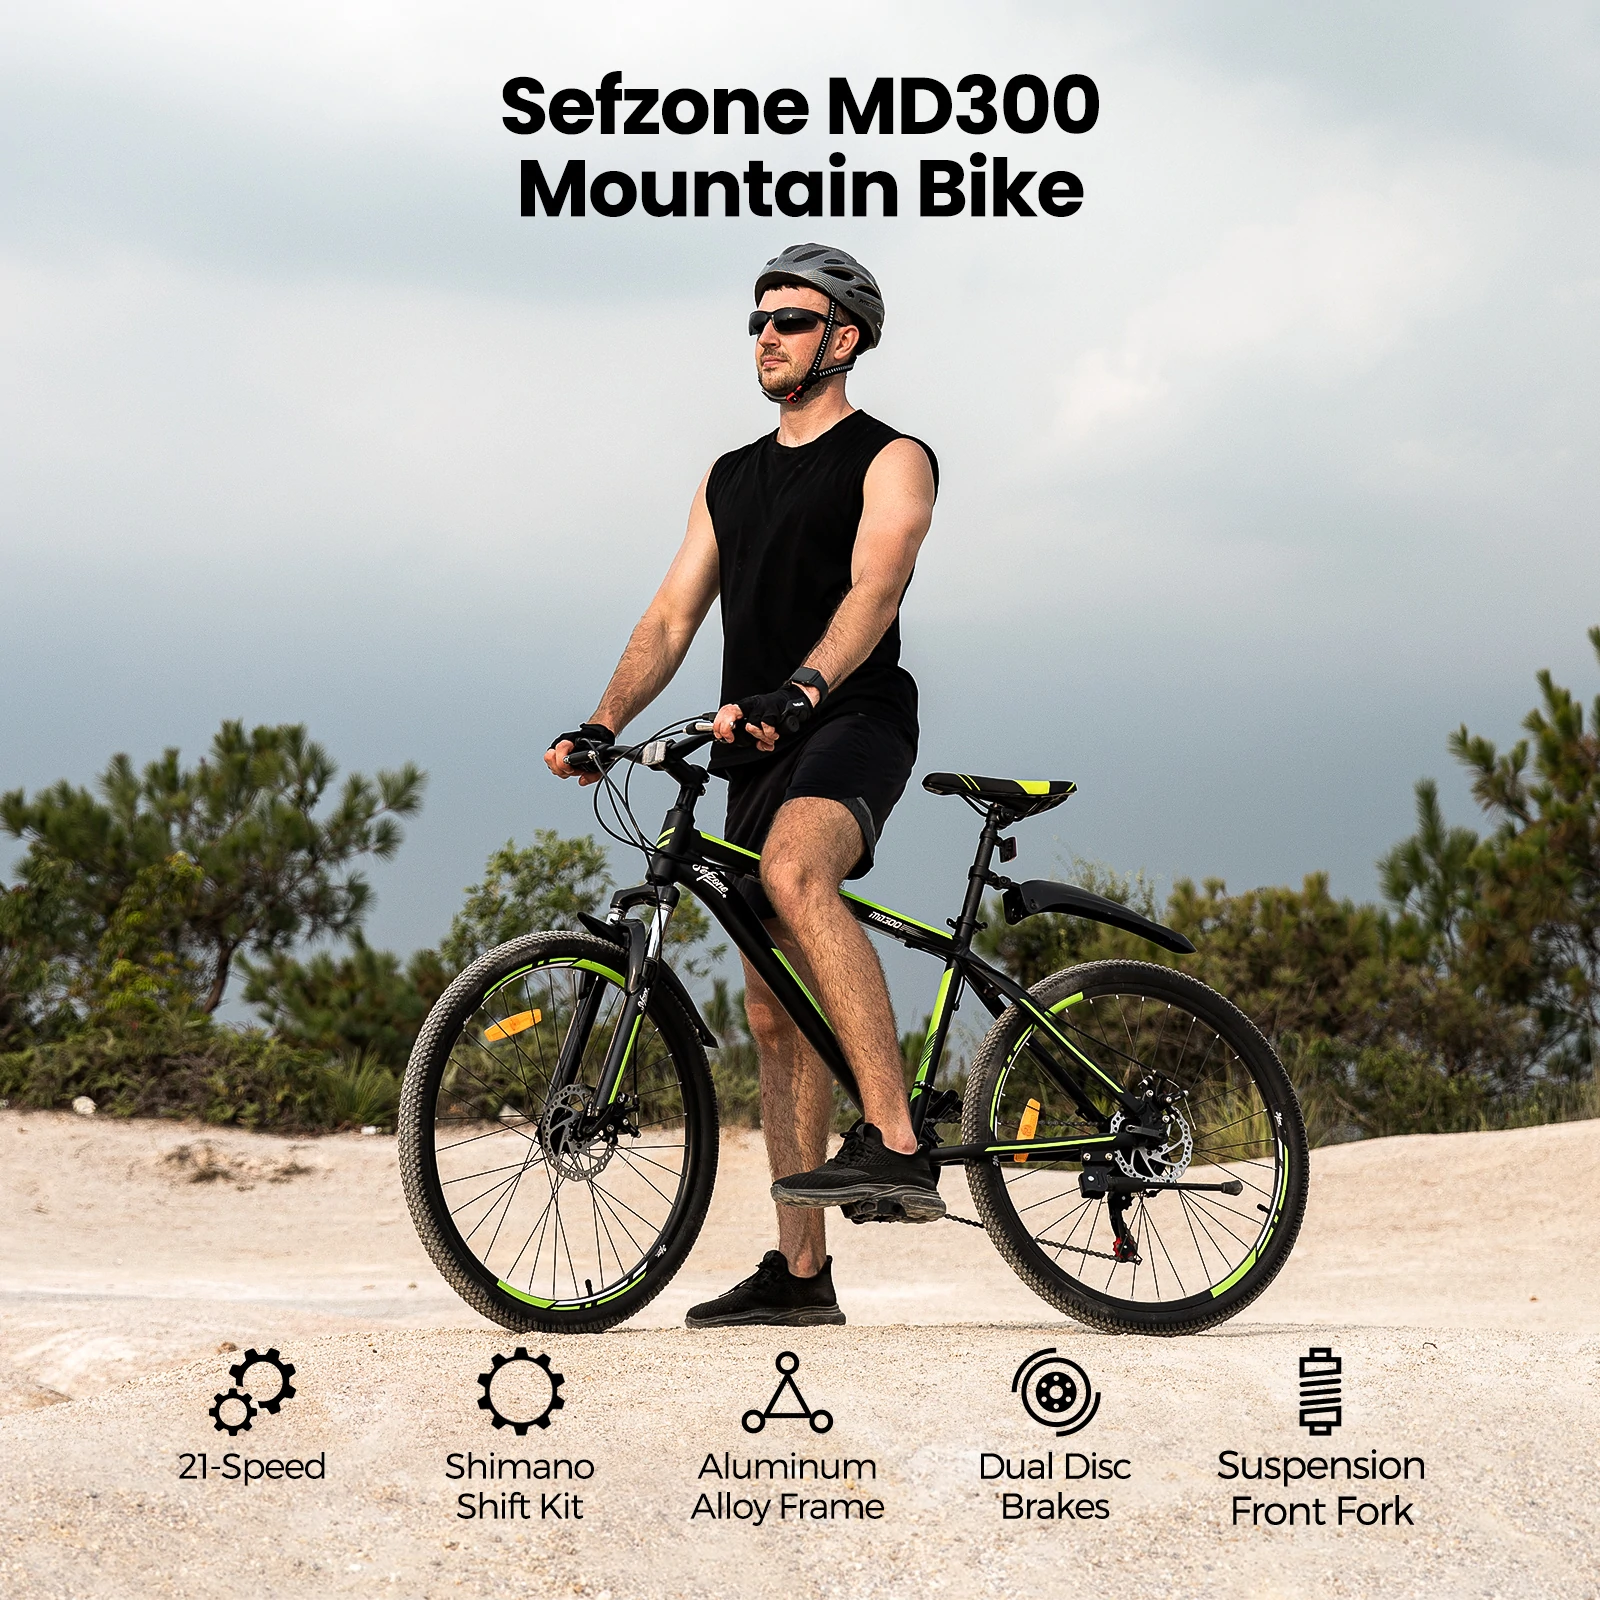 Sefzone MD300 – rower dla dorosłych w cenie roweru dziecięcego